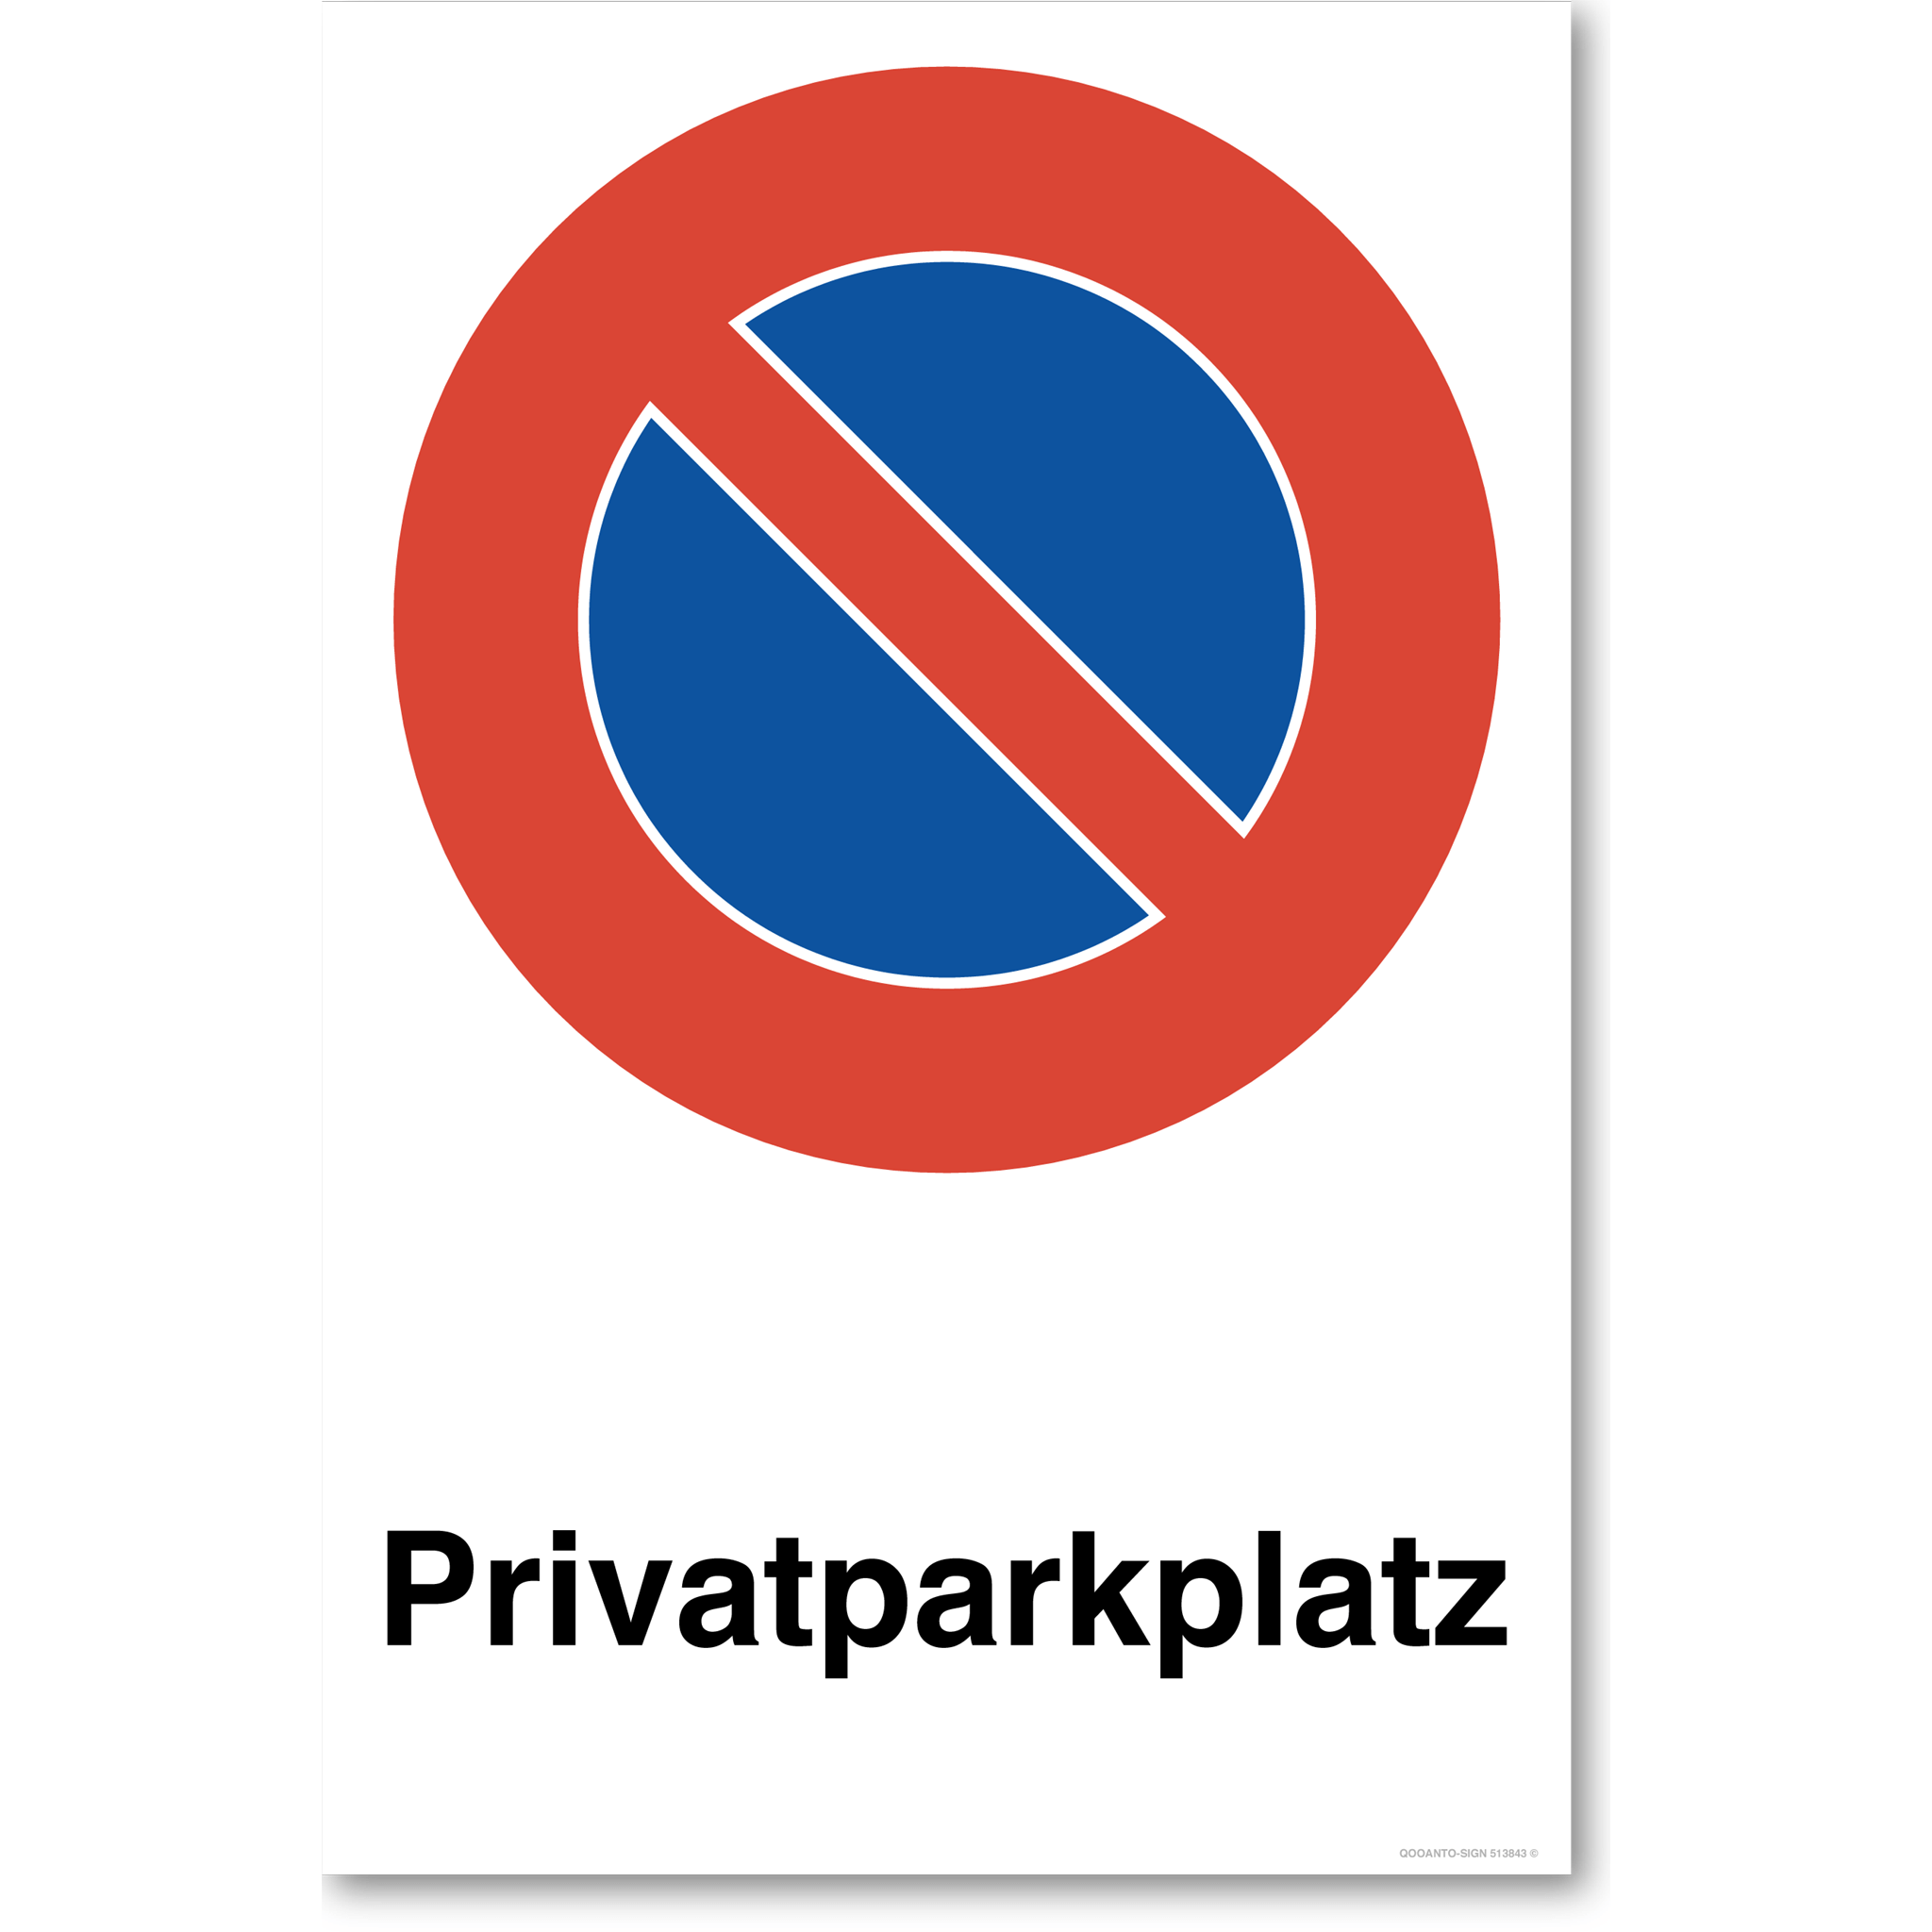 Privatparkplatz - Parkieren verboten - Parkverbotsschild hochformat